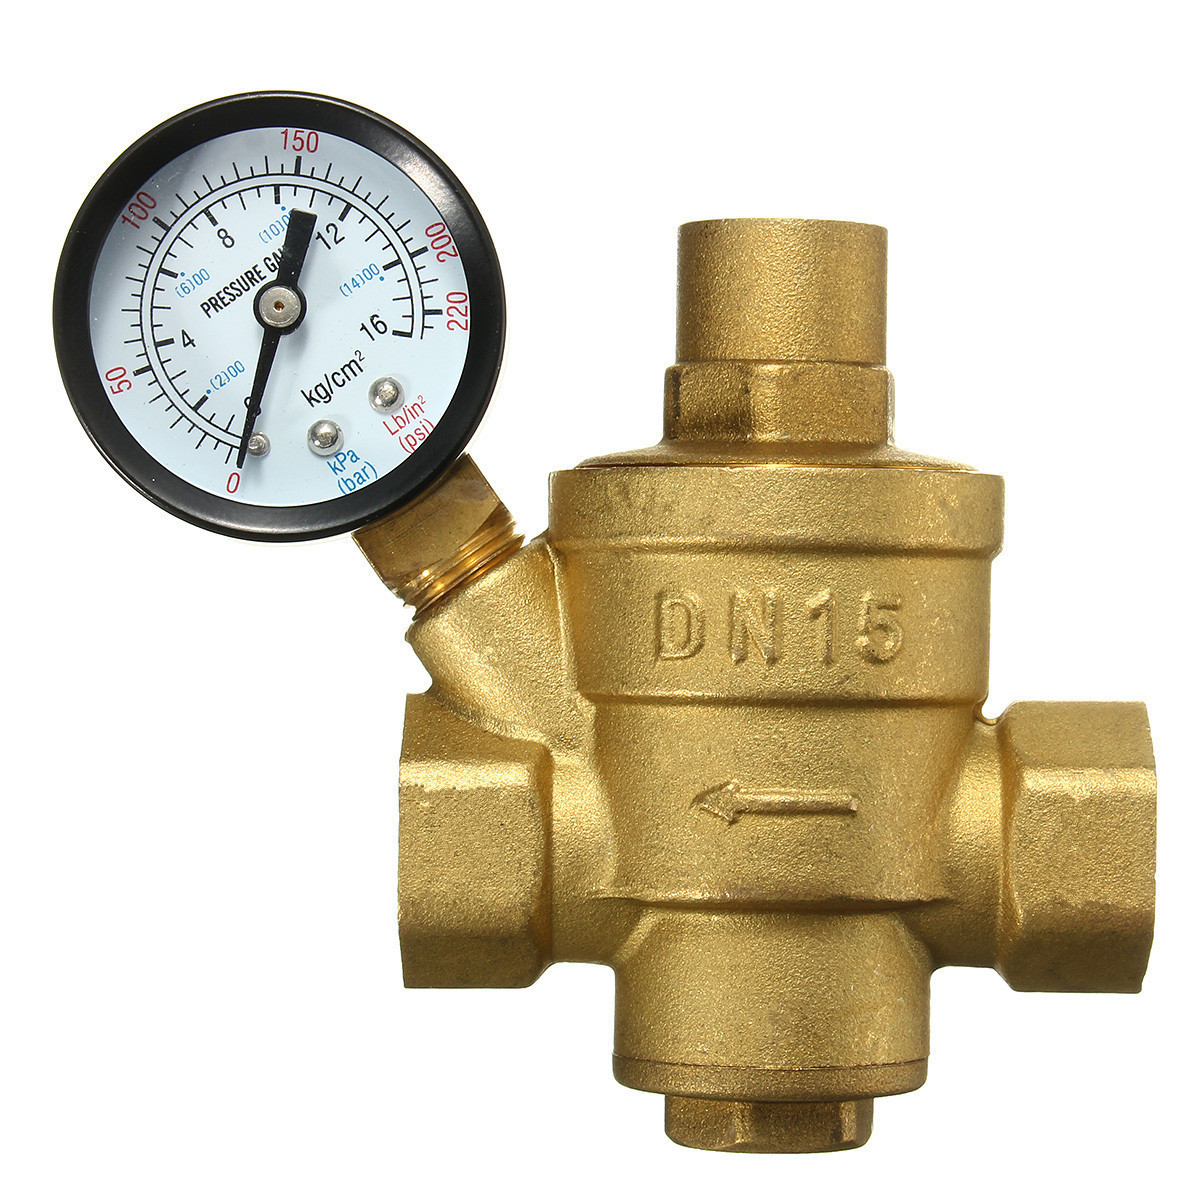 Adjustable DN15 Bspp Brass Water Pressure Reducing Valve with Gauge Flow 2